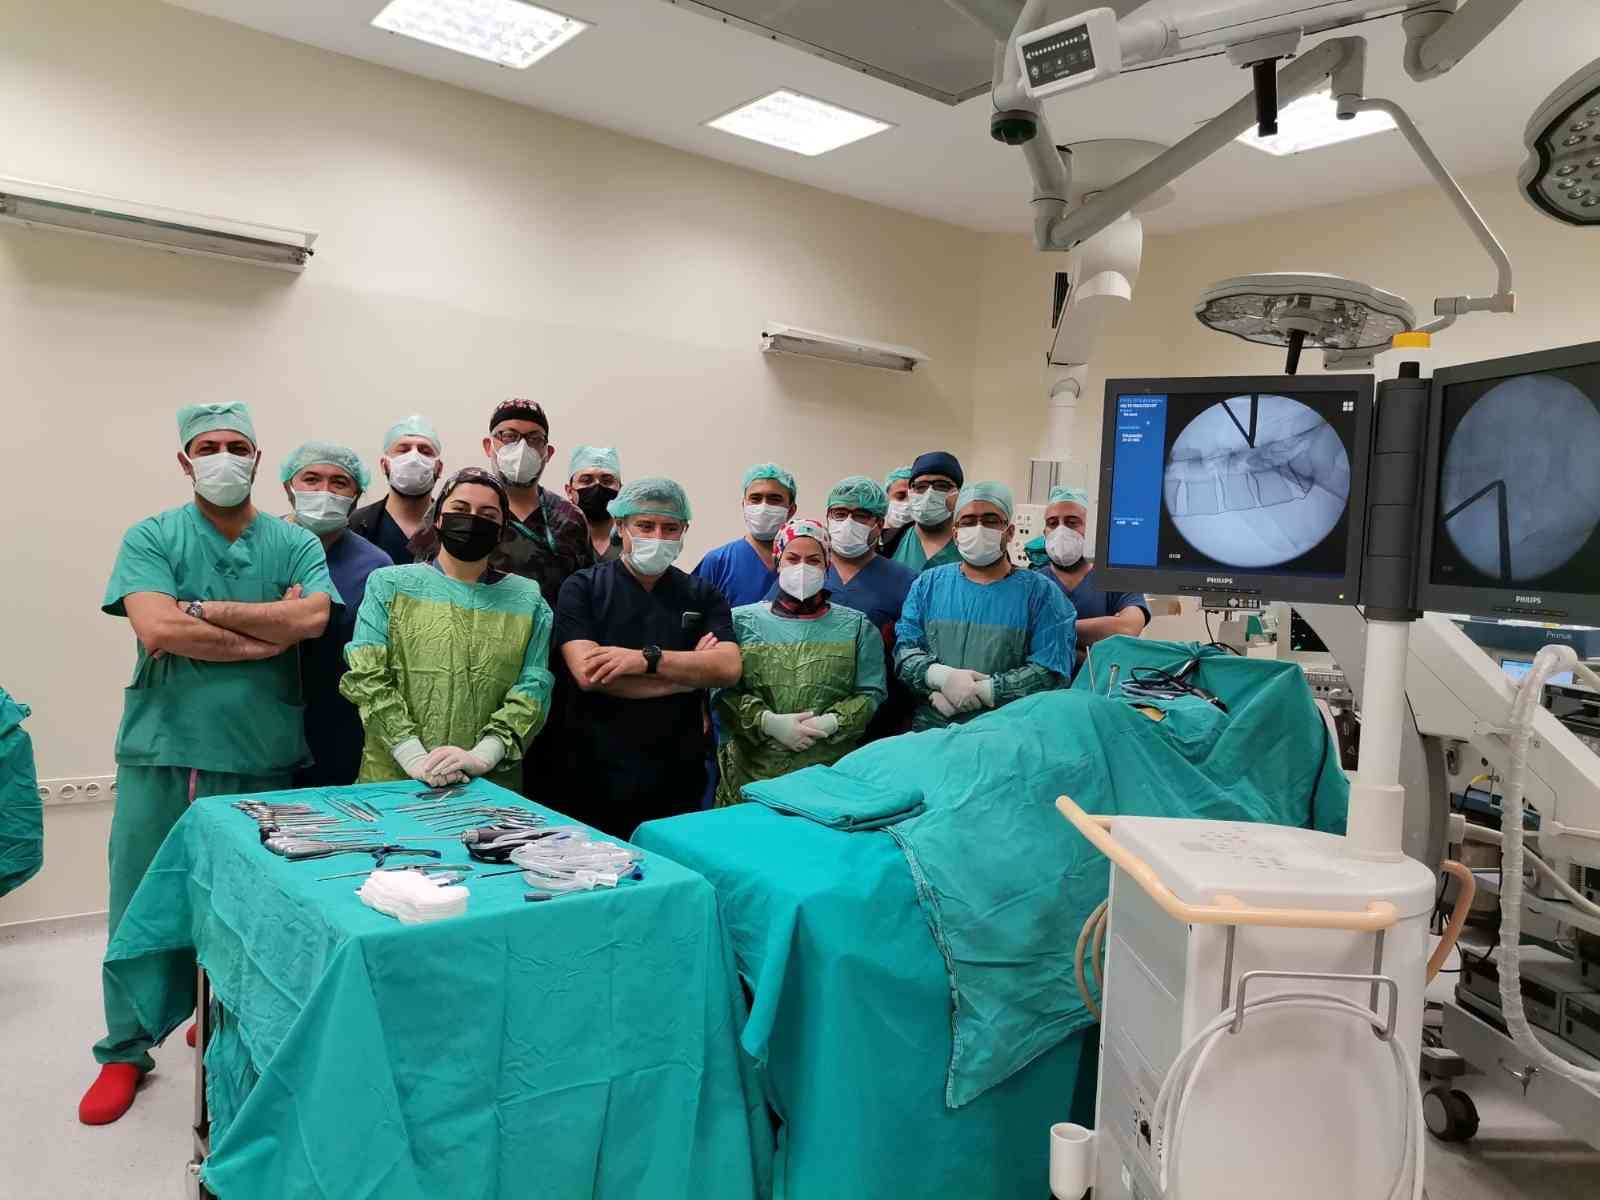 İki Portallı Kapalı Endoskopik Ameliyat tekniği Kahramanmaraş’ta uygulanmaya başlandı #kahramanmaras